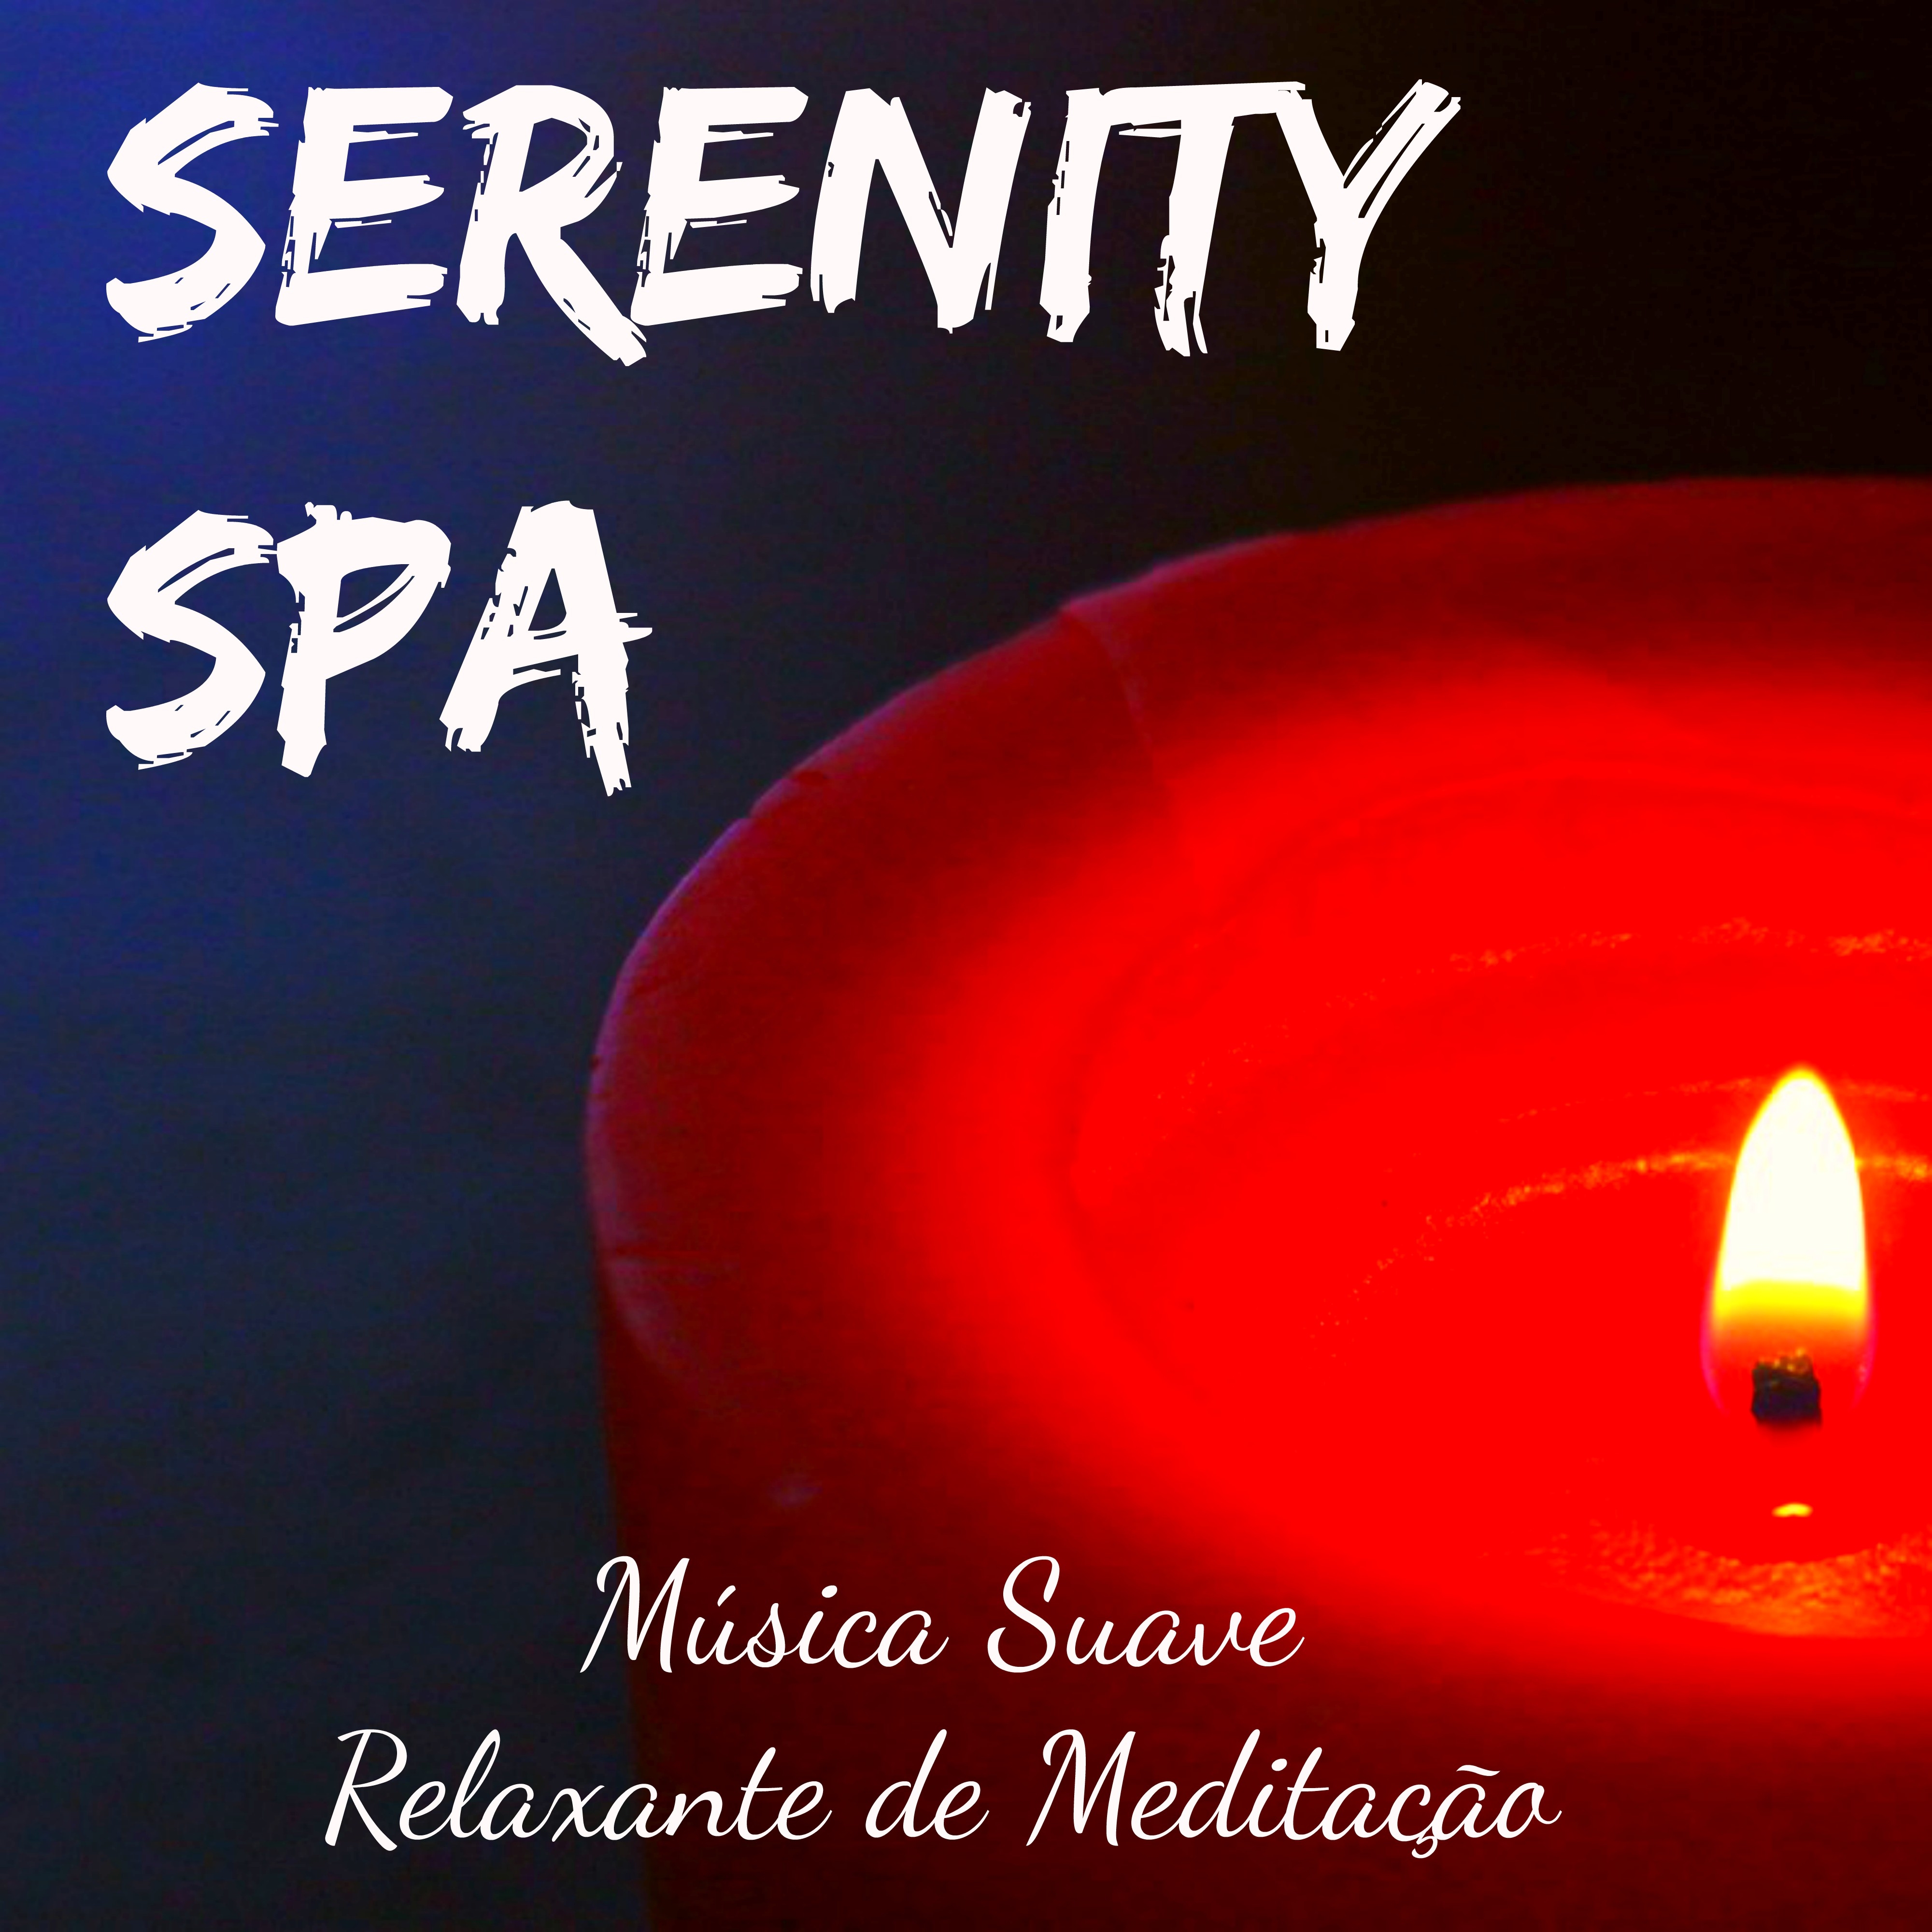 Serenity Spa - Música Suave Relaxante de Meditação para Doces Sonhos Poder Espiritual Vibrações Positivas com Sons da Natureza Instrumentais Binaurais